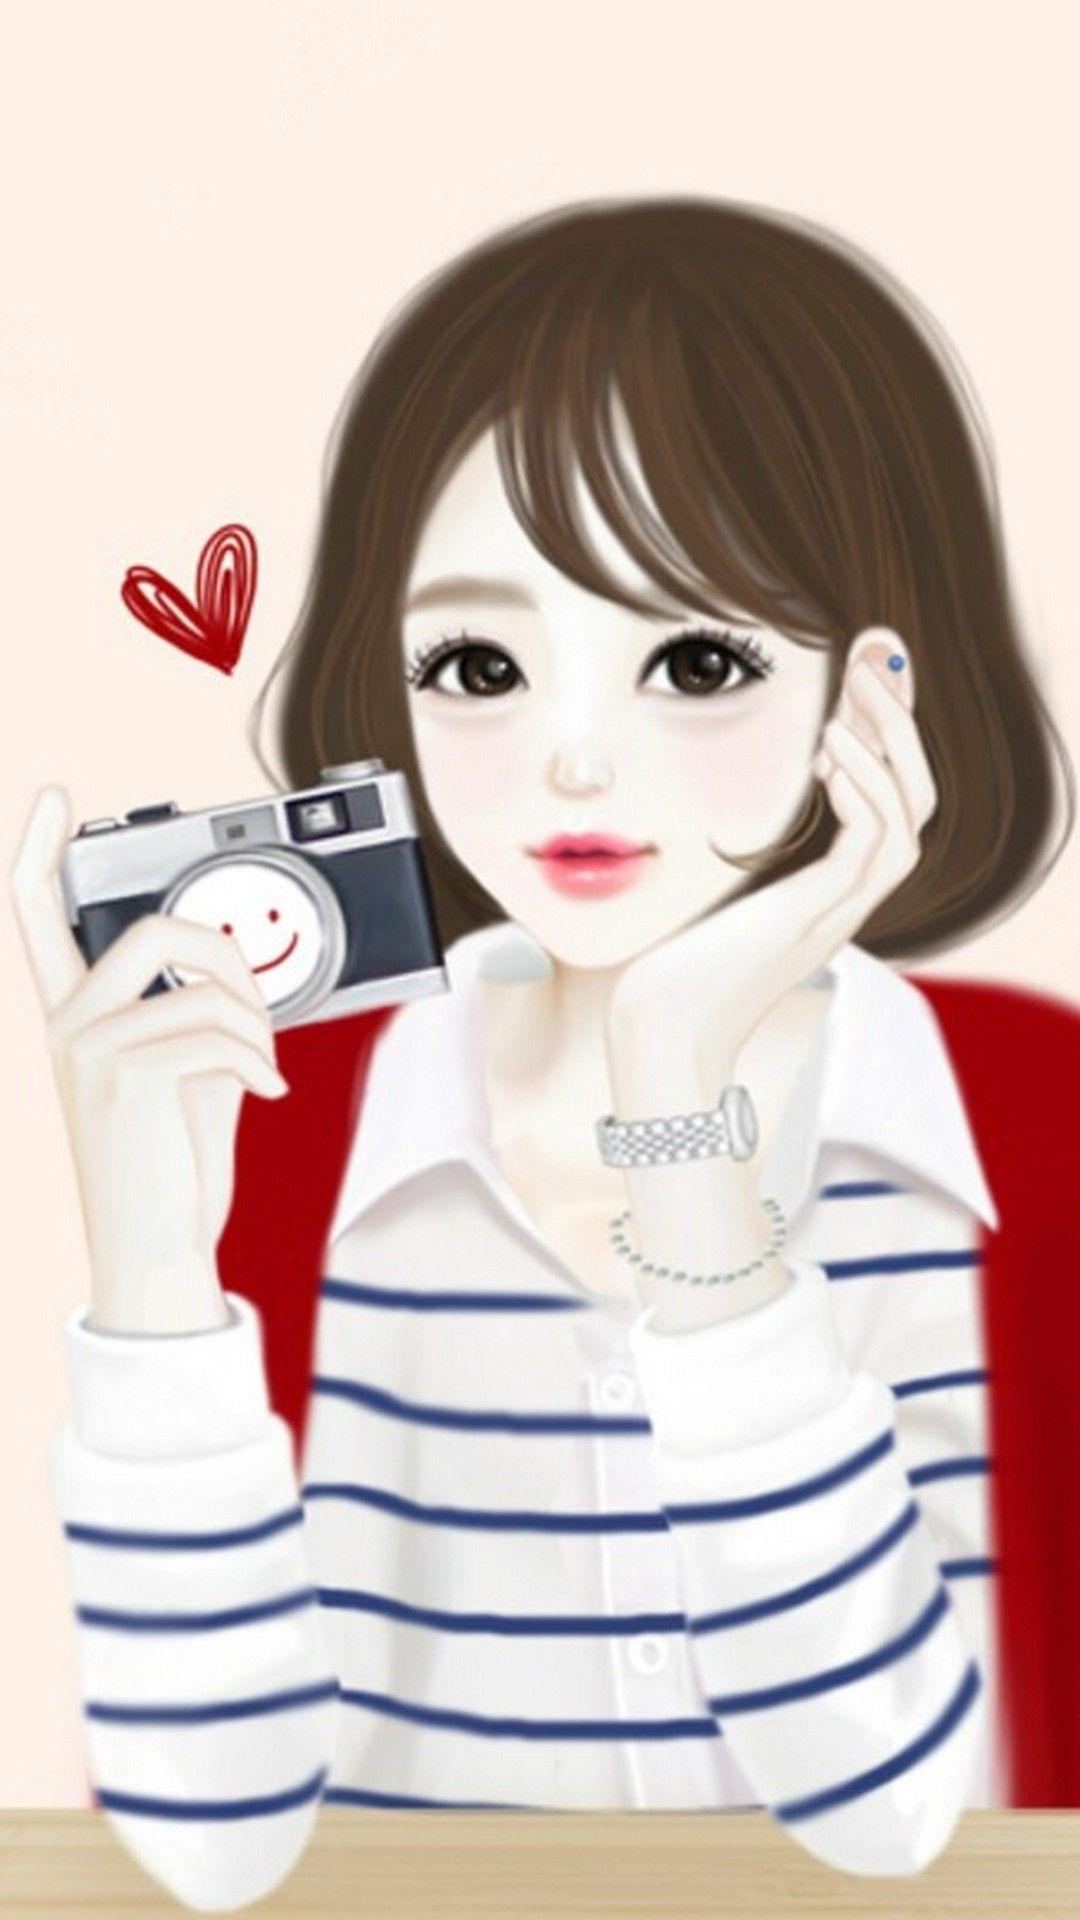 Cute Drawings Wallpaper For Phone HD. Cute girl